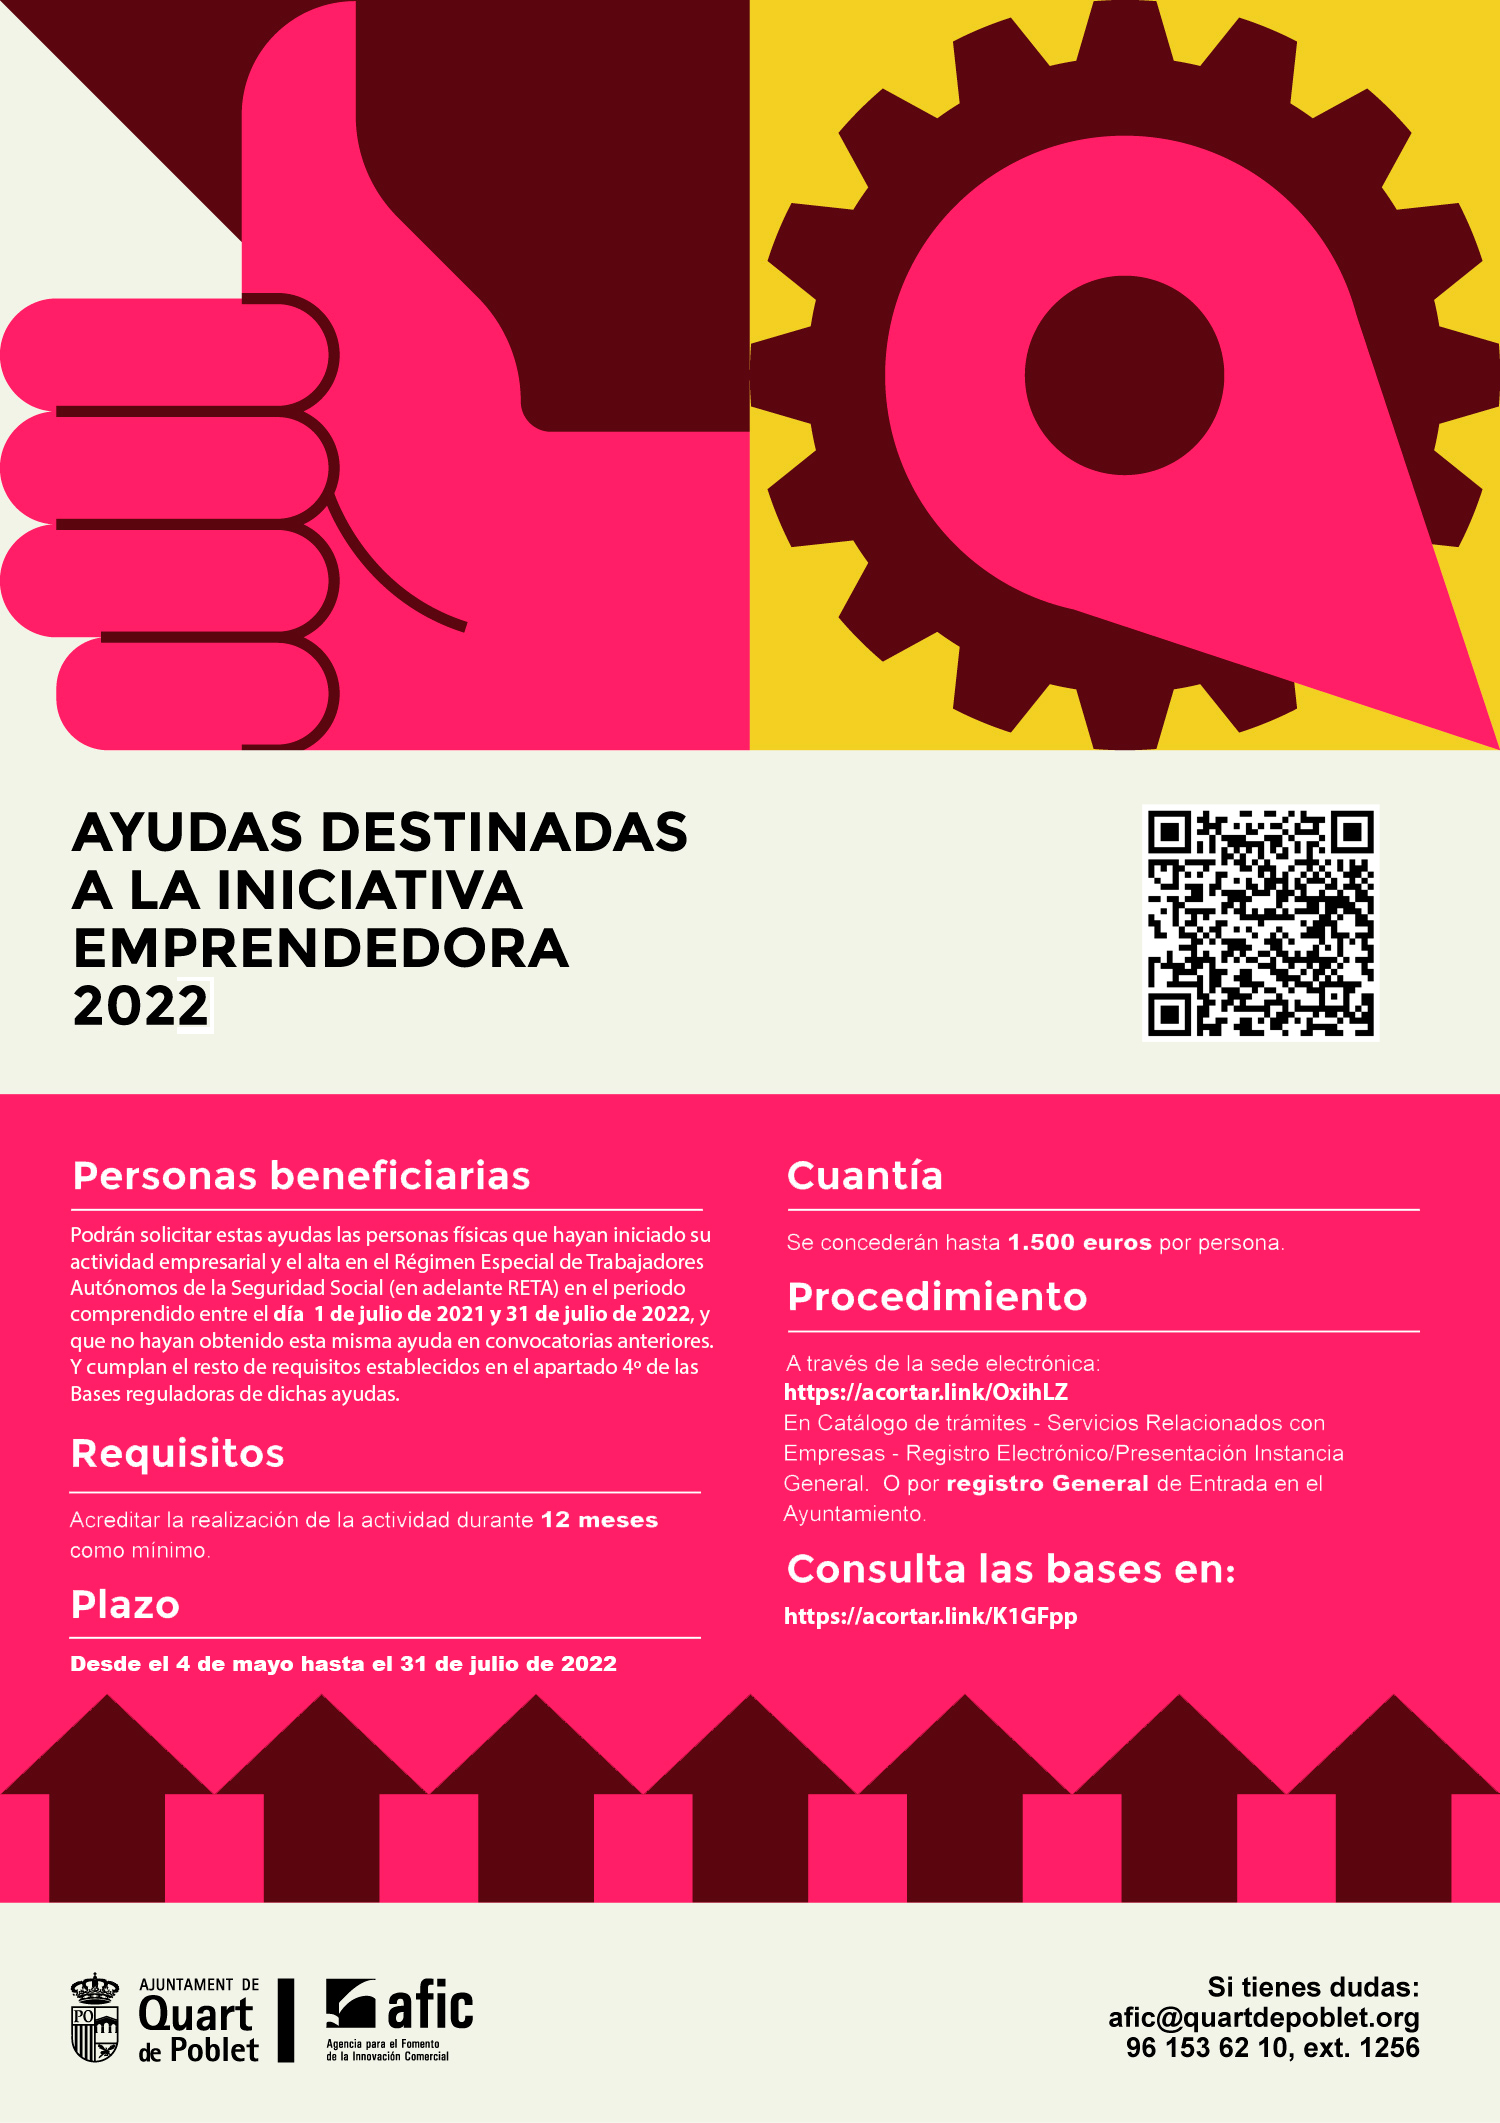 Ayudas a la inicitiva emprendedora 2022, promovidas por el ayuntamiento Quart de Poblet